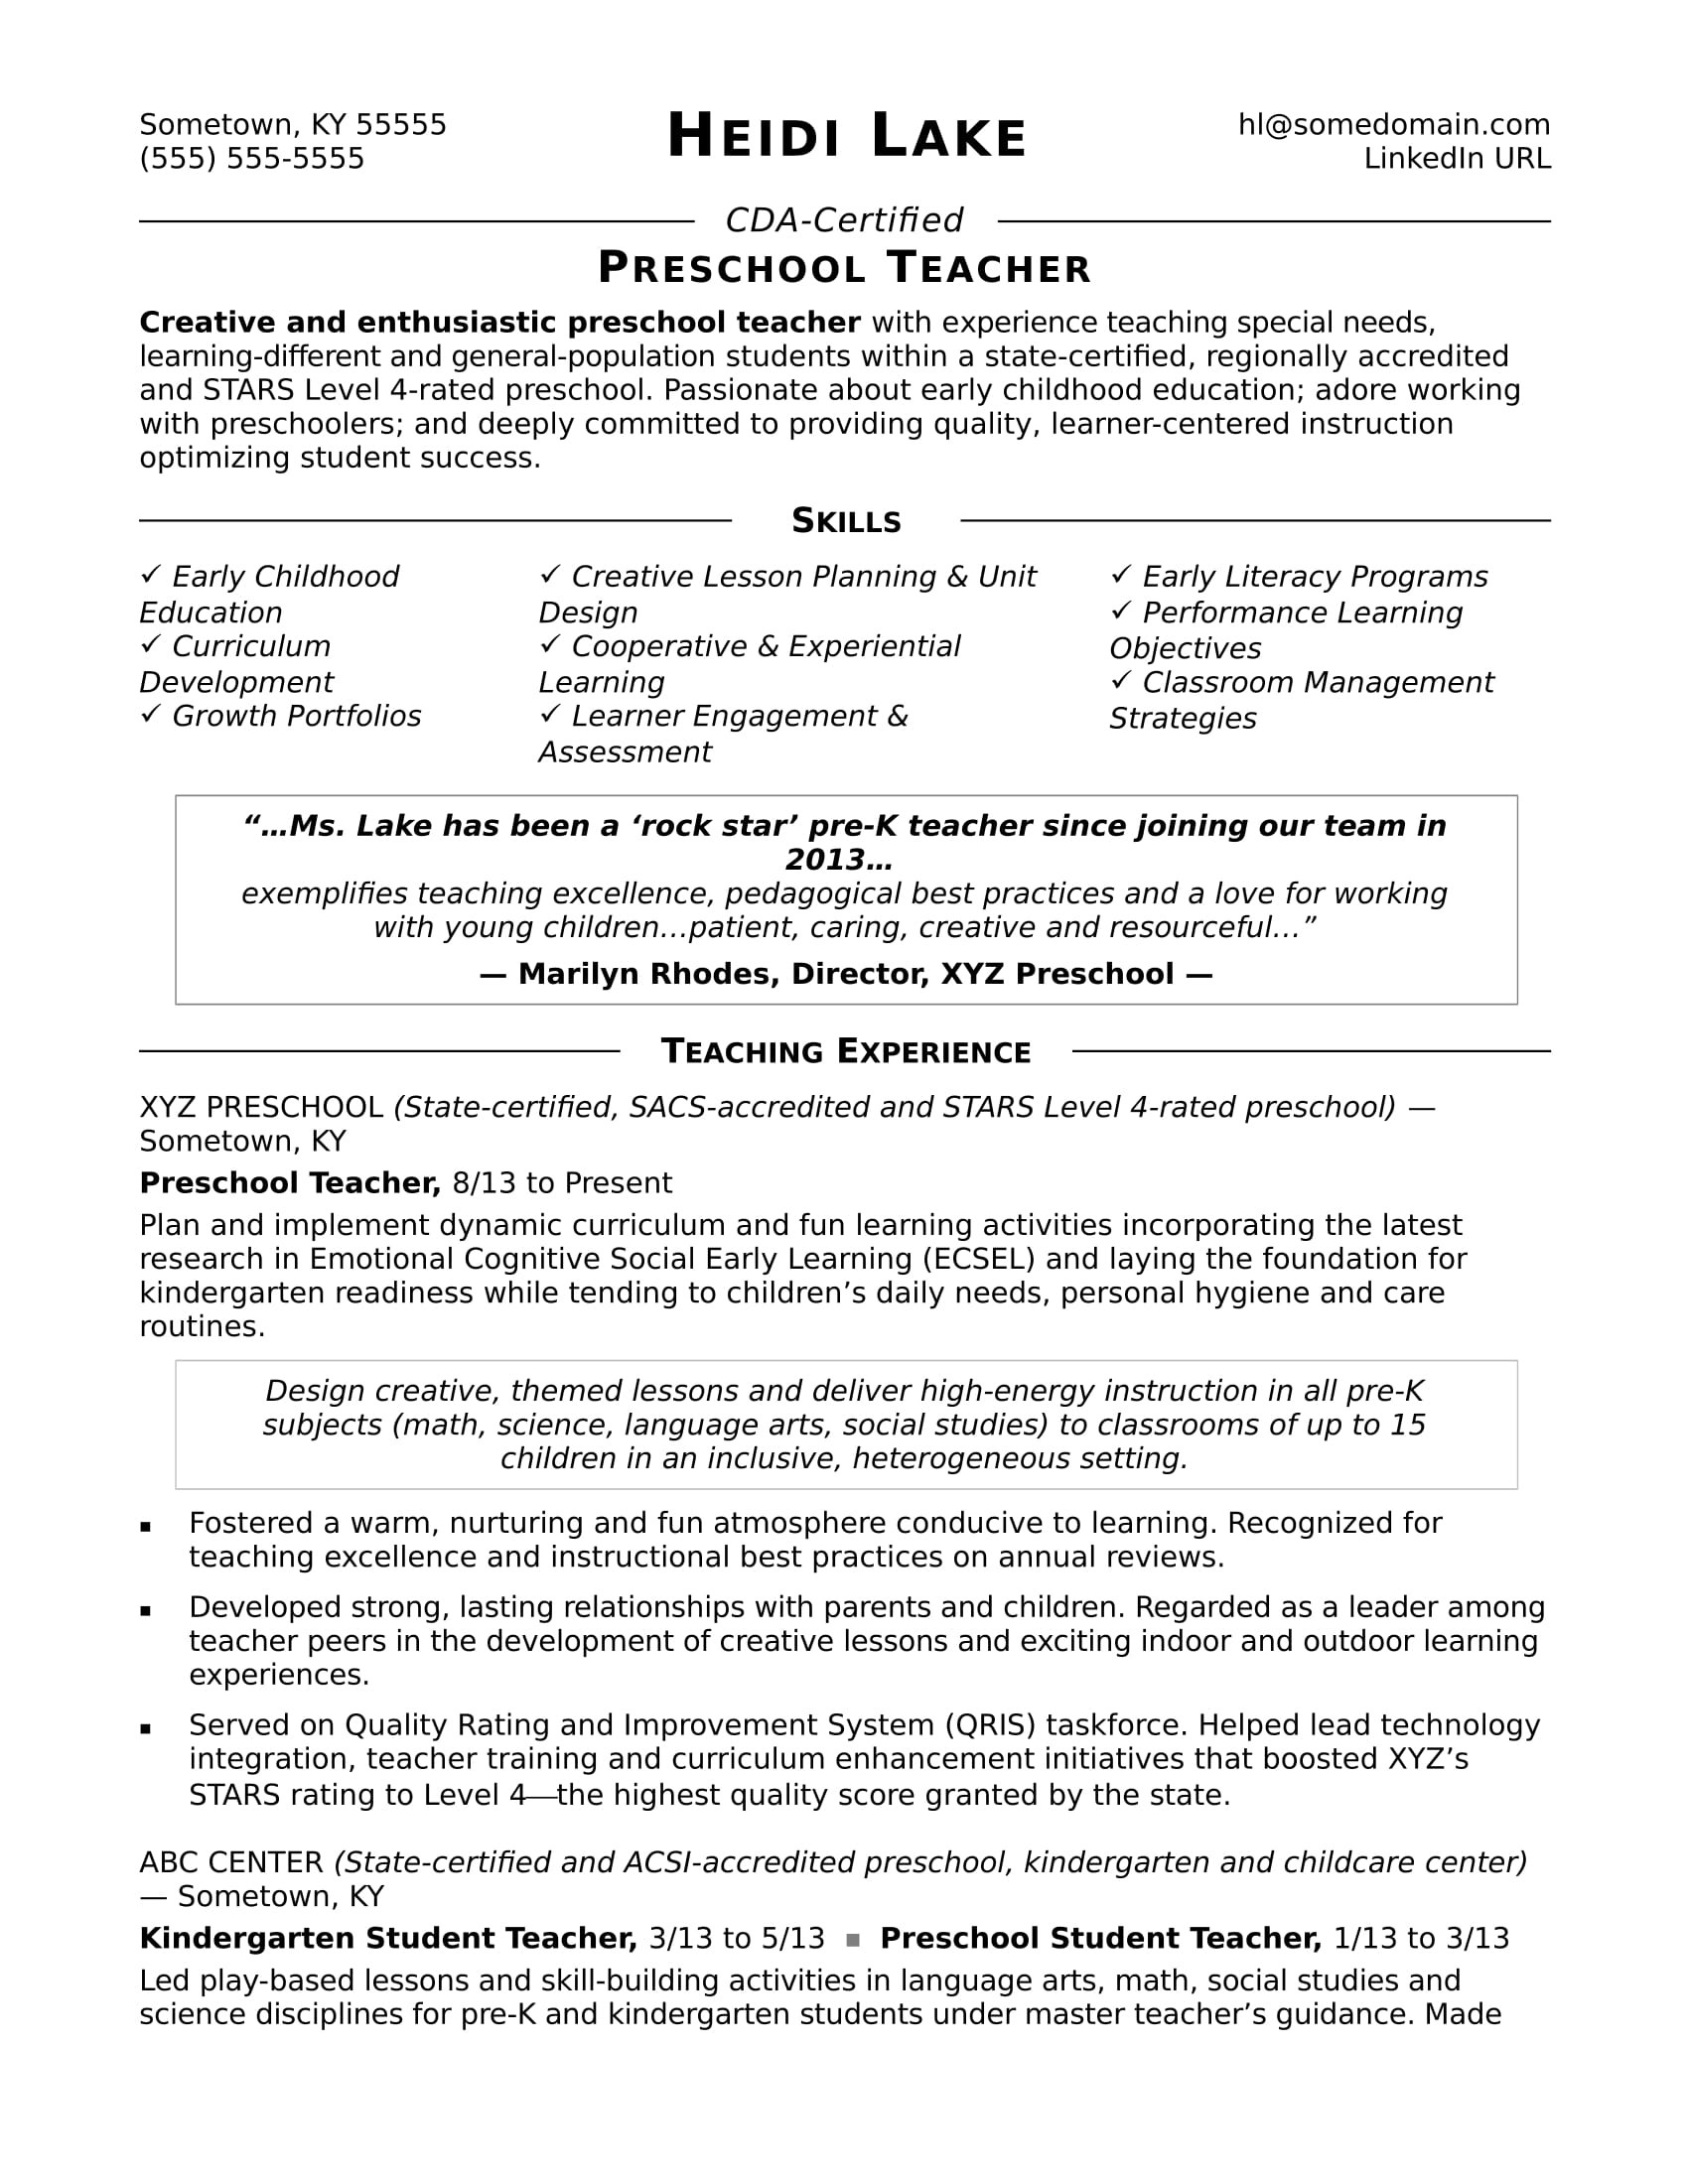 Samples Of Objectives In Resumes for Teachers Preschool Teacher Resume Sample Monster.com